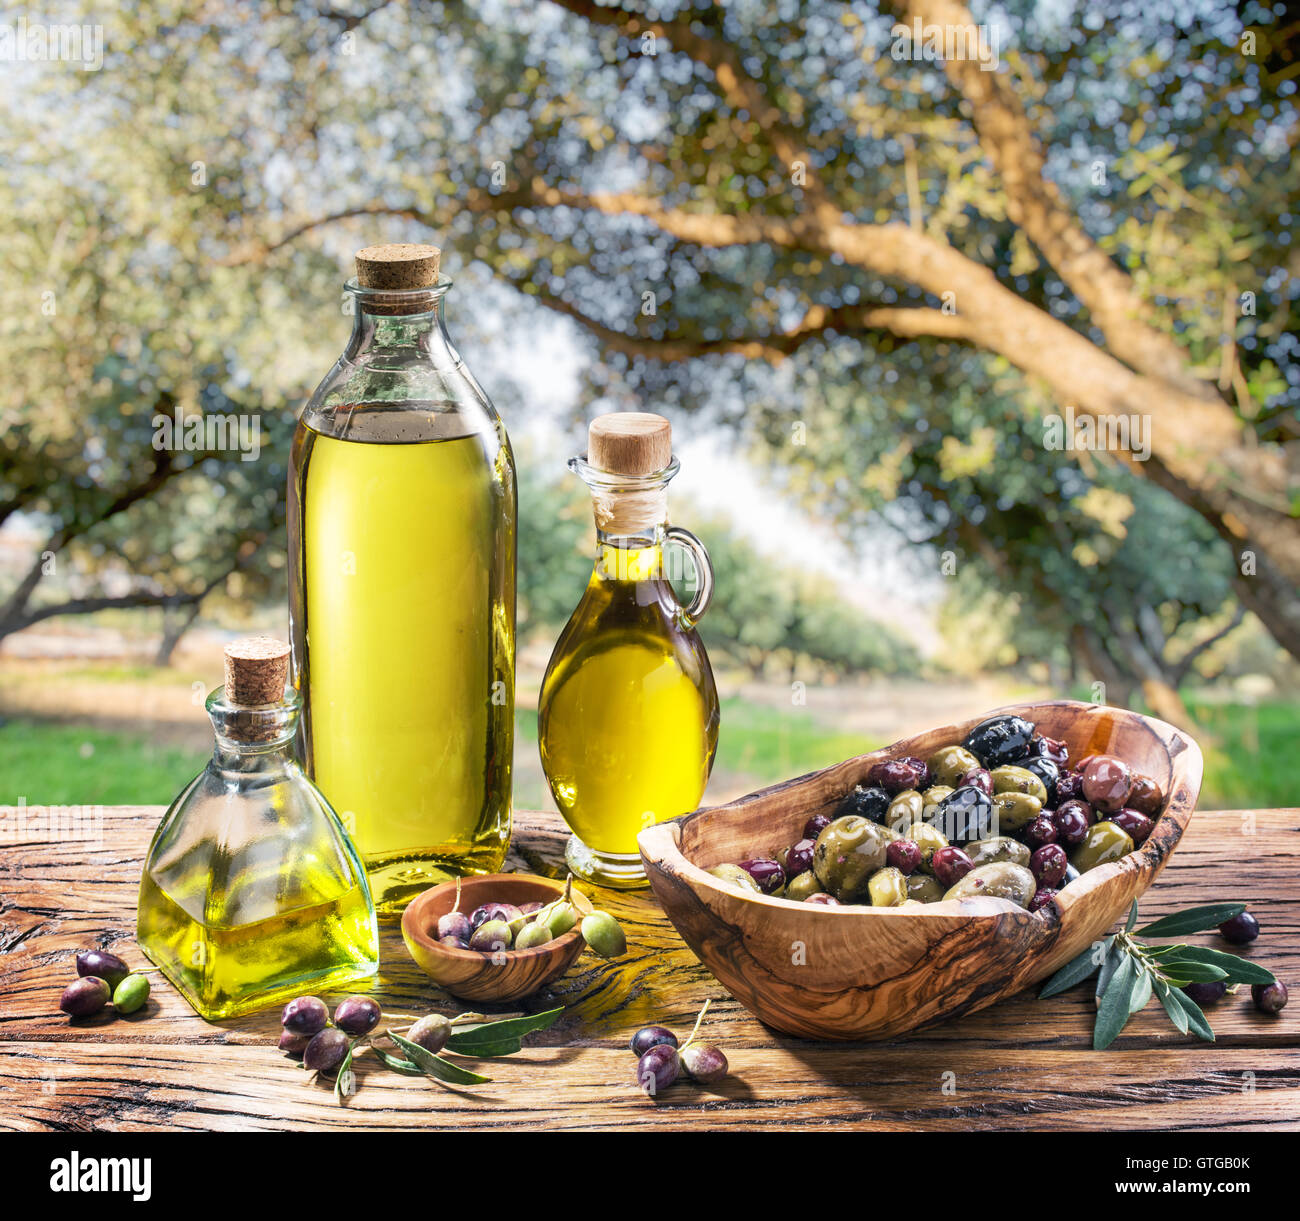 El aceite de oliva y bayas están sobre la mesa de madera bajo el olivo. Foto de stock